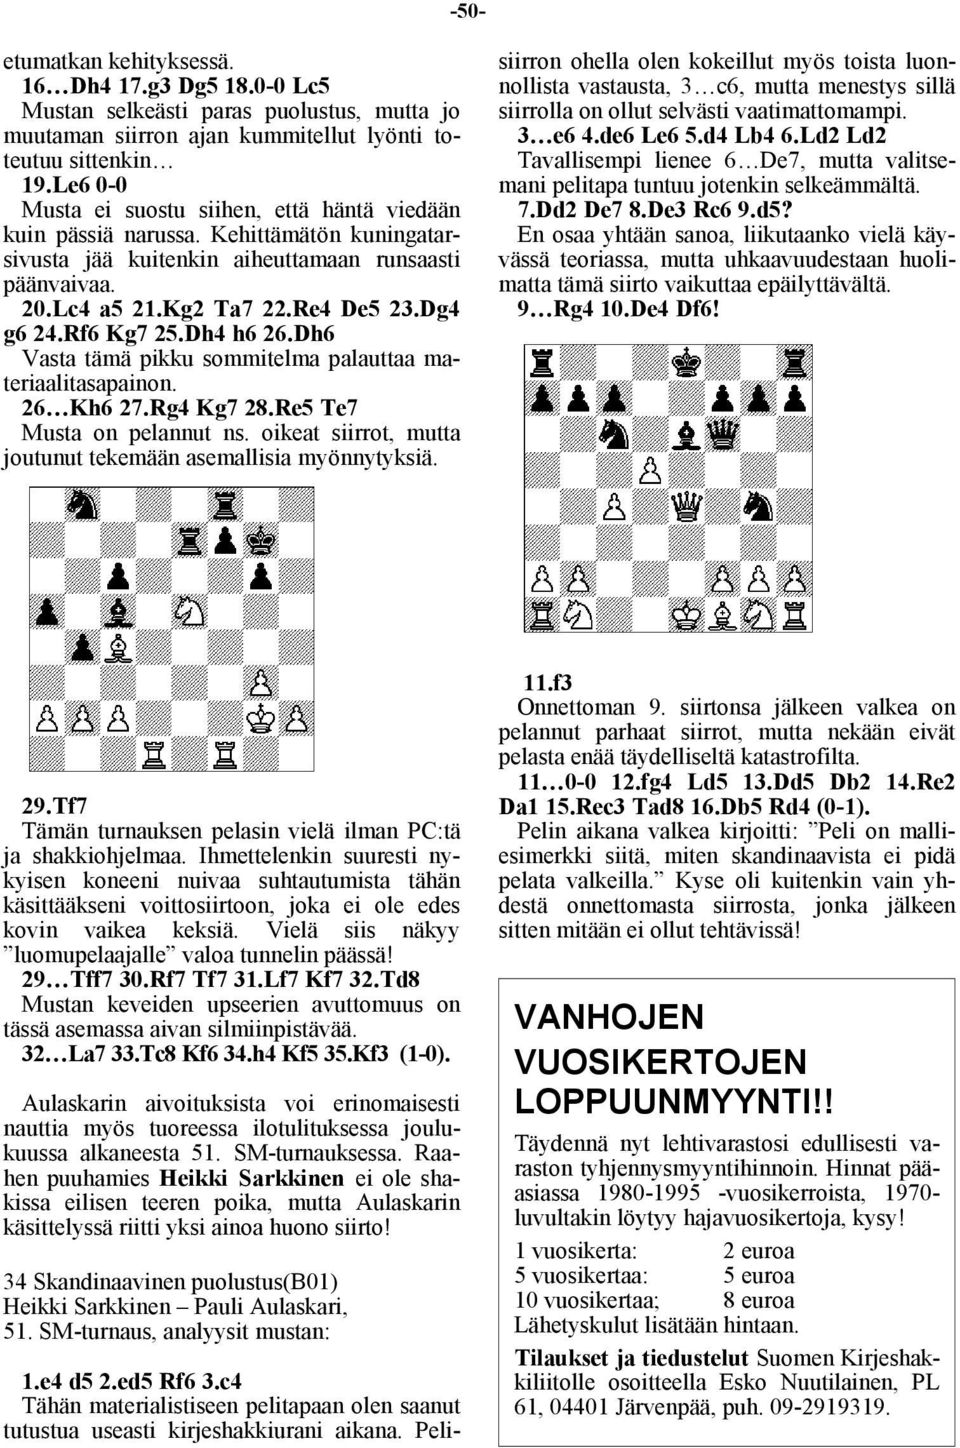 Rf6 Kg7 25.Dh4 h6 26.Dh6 Vasta tämä pikku sommitelma palauttaa materiaalitasapainon. 26 Kh6 27.Rg4 Kg7 28.Re5 Te7 Musta on pelannut ns.